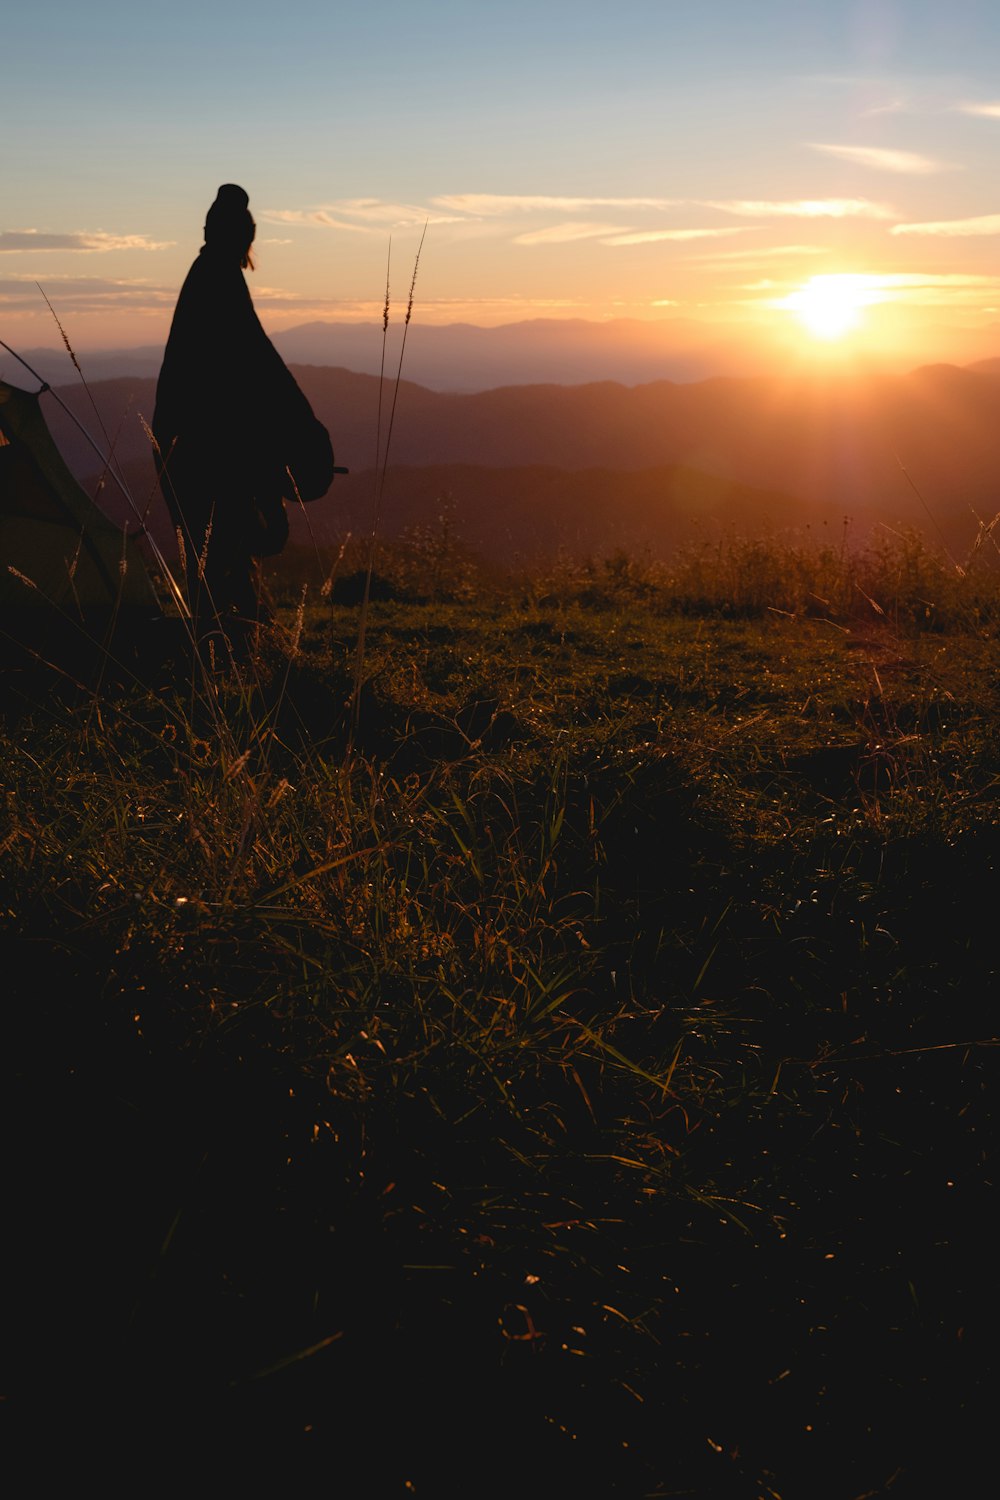 언덕에 서 있는 가운을 입은 사람의 실루엣 사진